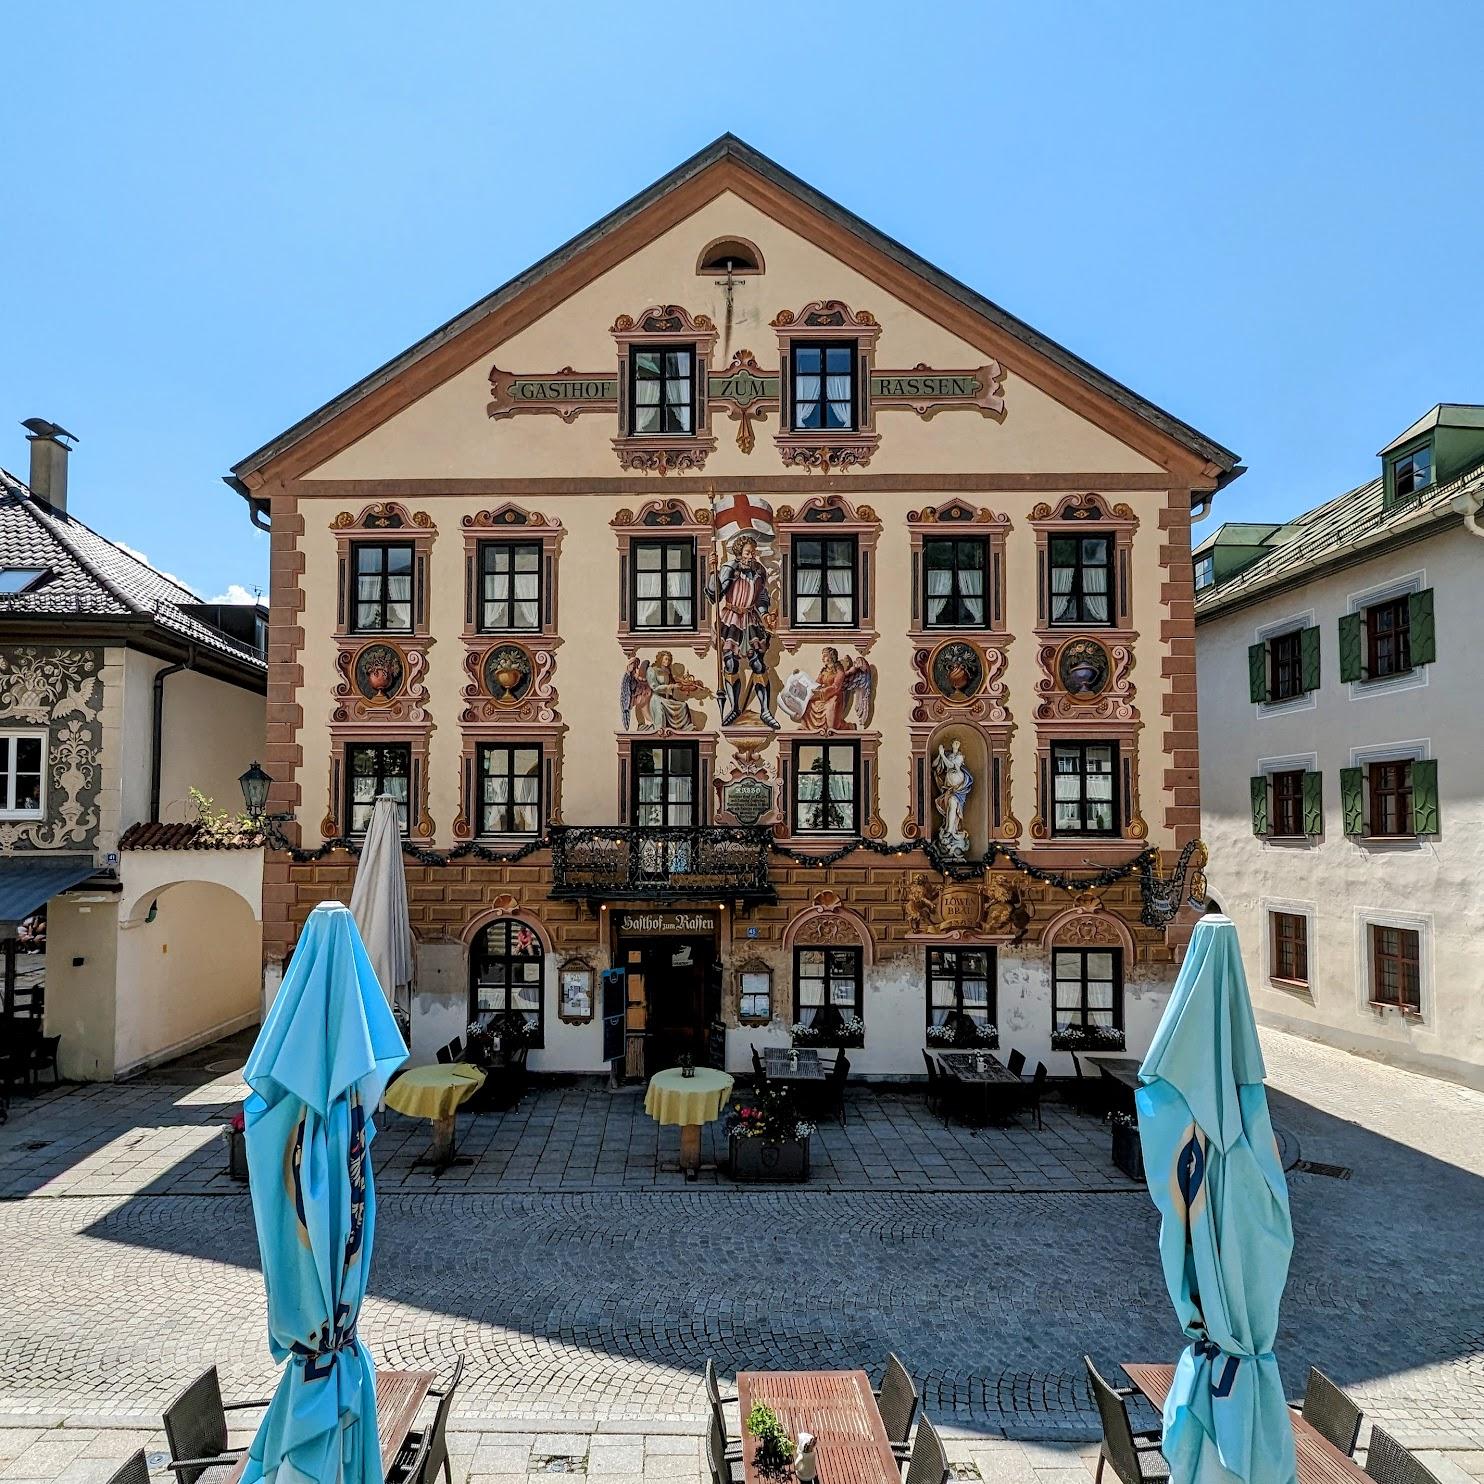 Restaurant "Gasthof zum Rassen" in Garmisch-Partenkirchen